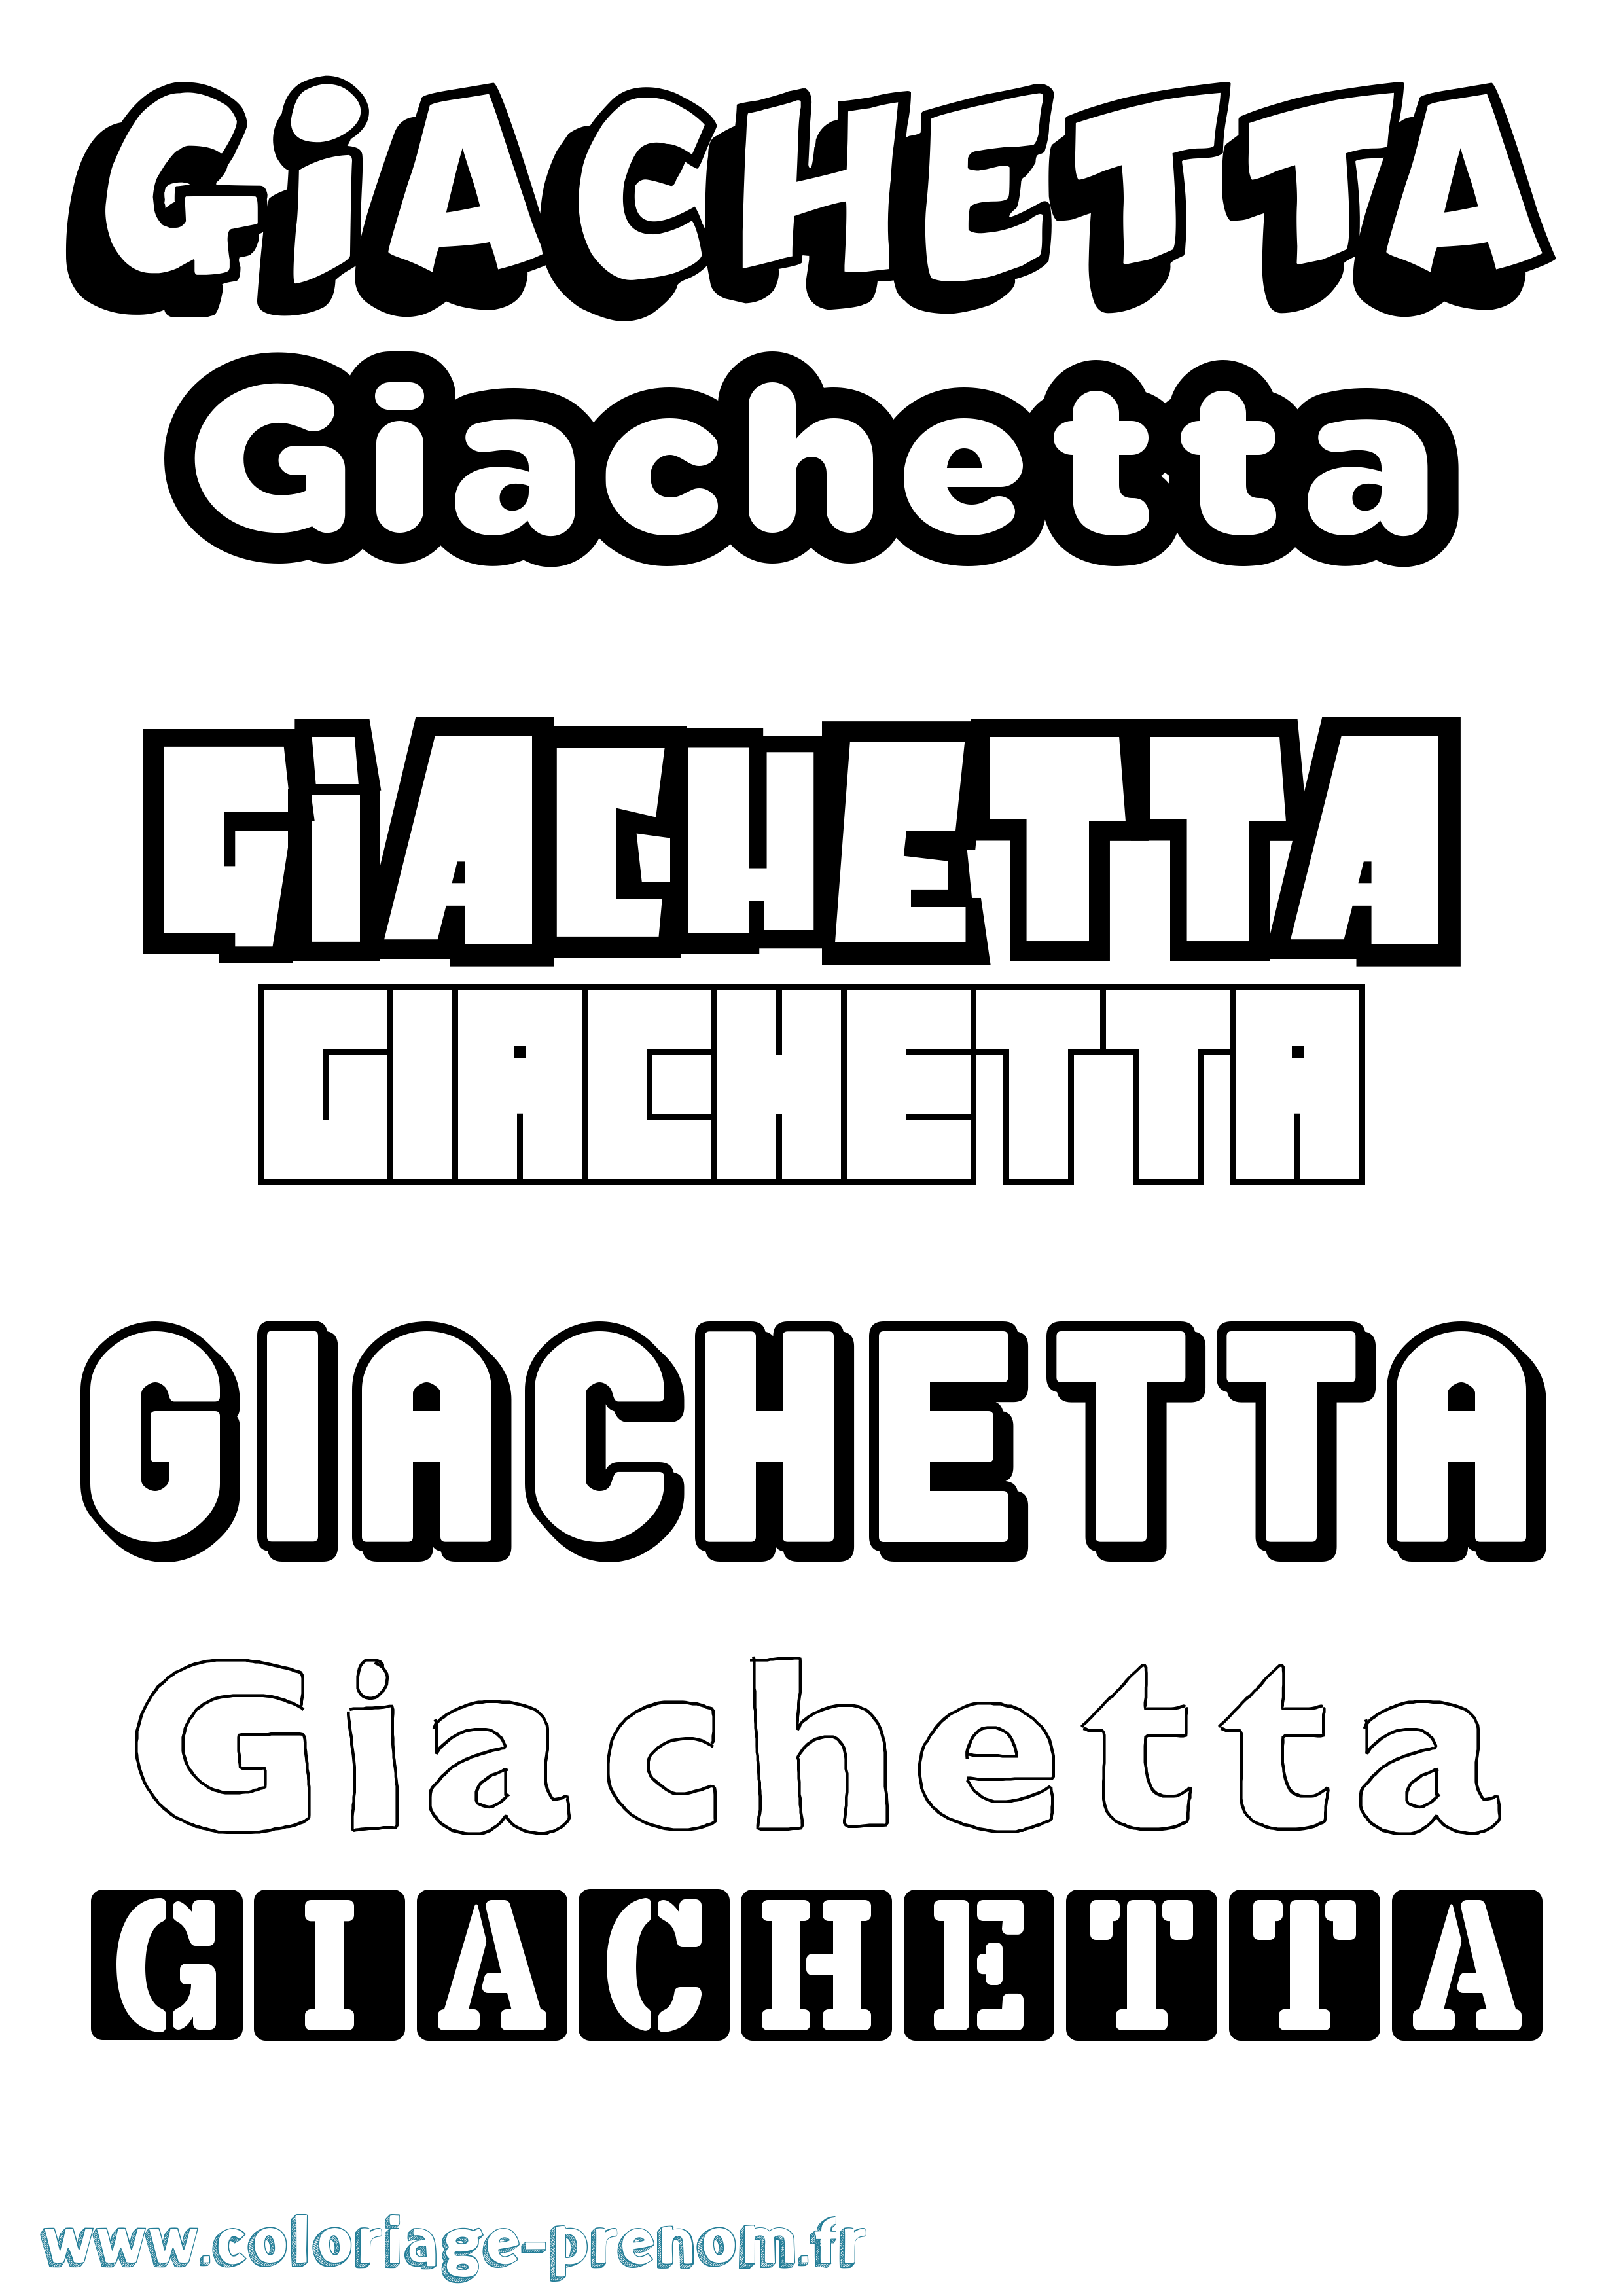 Coloriage prénom Giachetta Simple